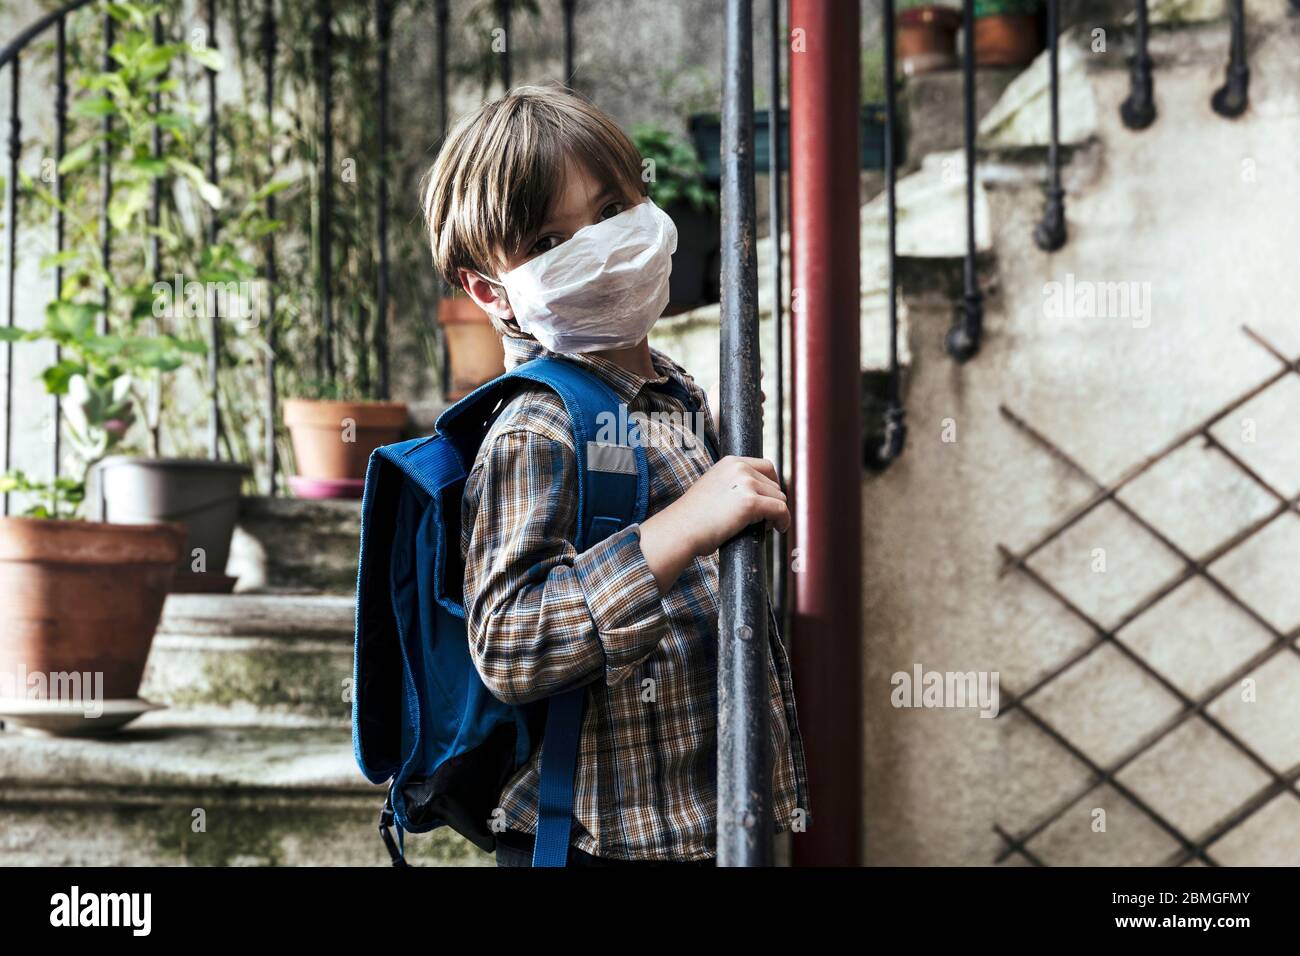 Épidémie de coronavirus, Covid-19: Illustration de la réouverture des écoles. Garçon avec un sac à dos et un masque de protection, le 30 avril 2020 Banque D'Images